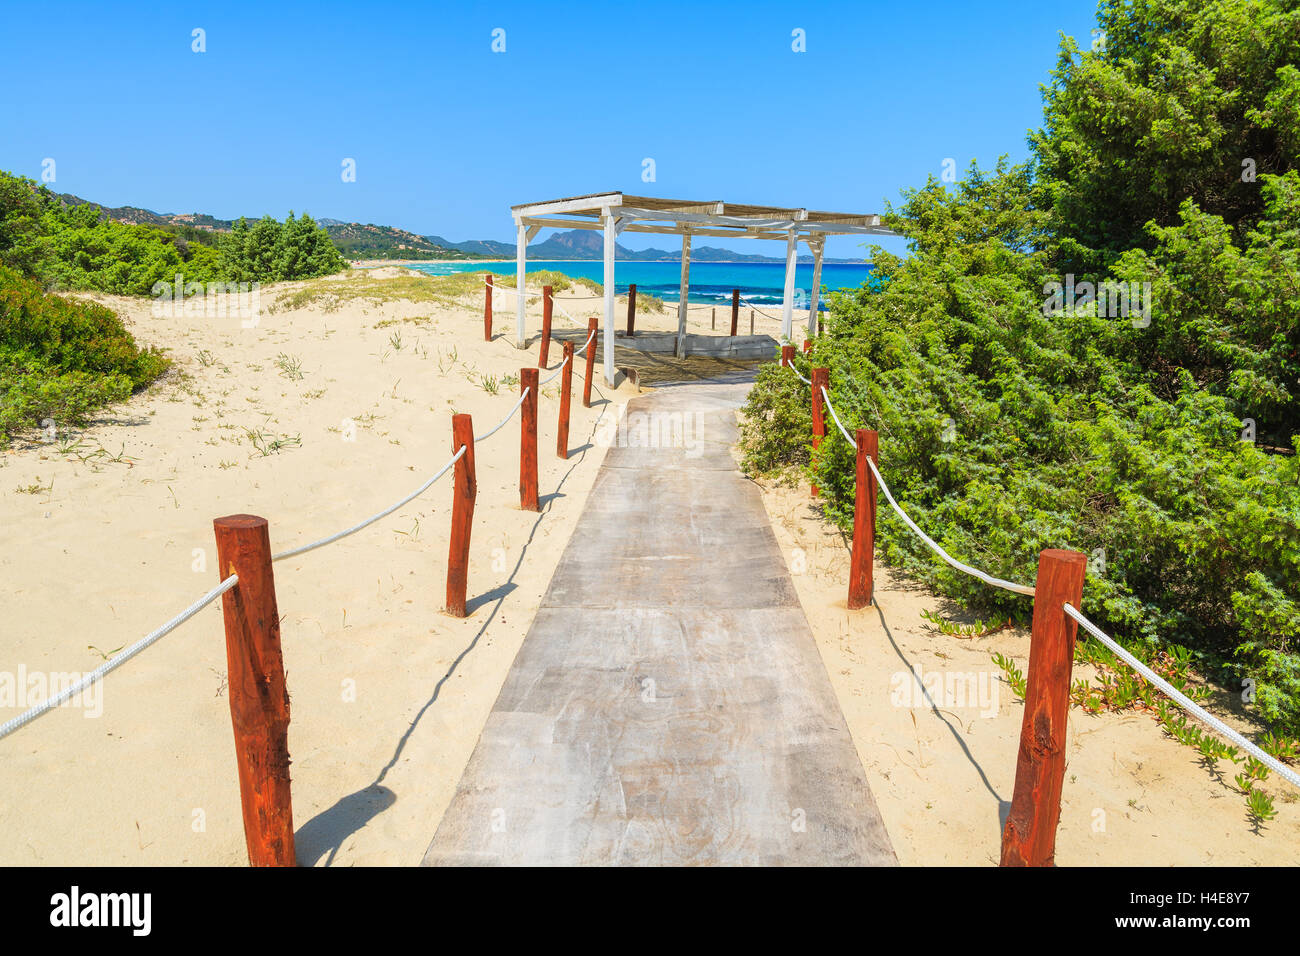 Percorso a piedi alla spiaggia di Costa Rei, Sardegna, Italia Foto Stock